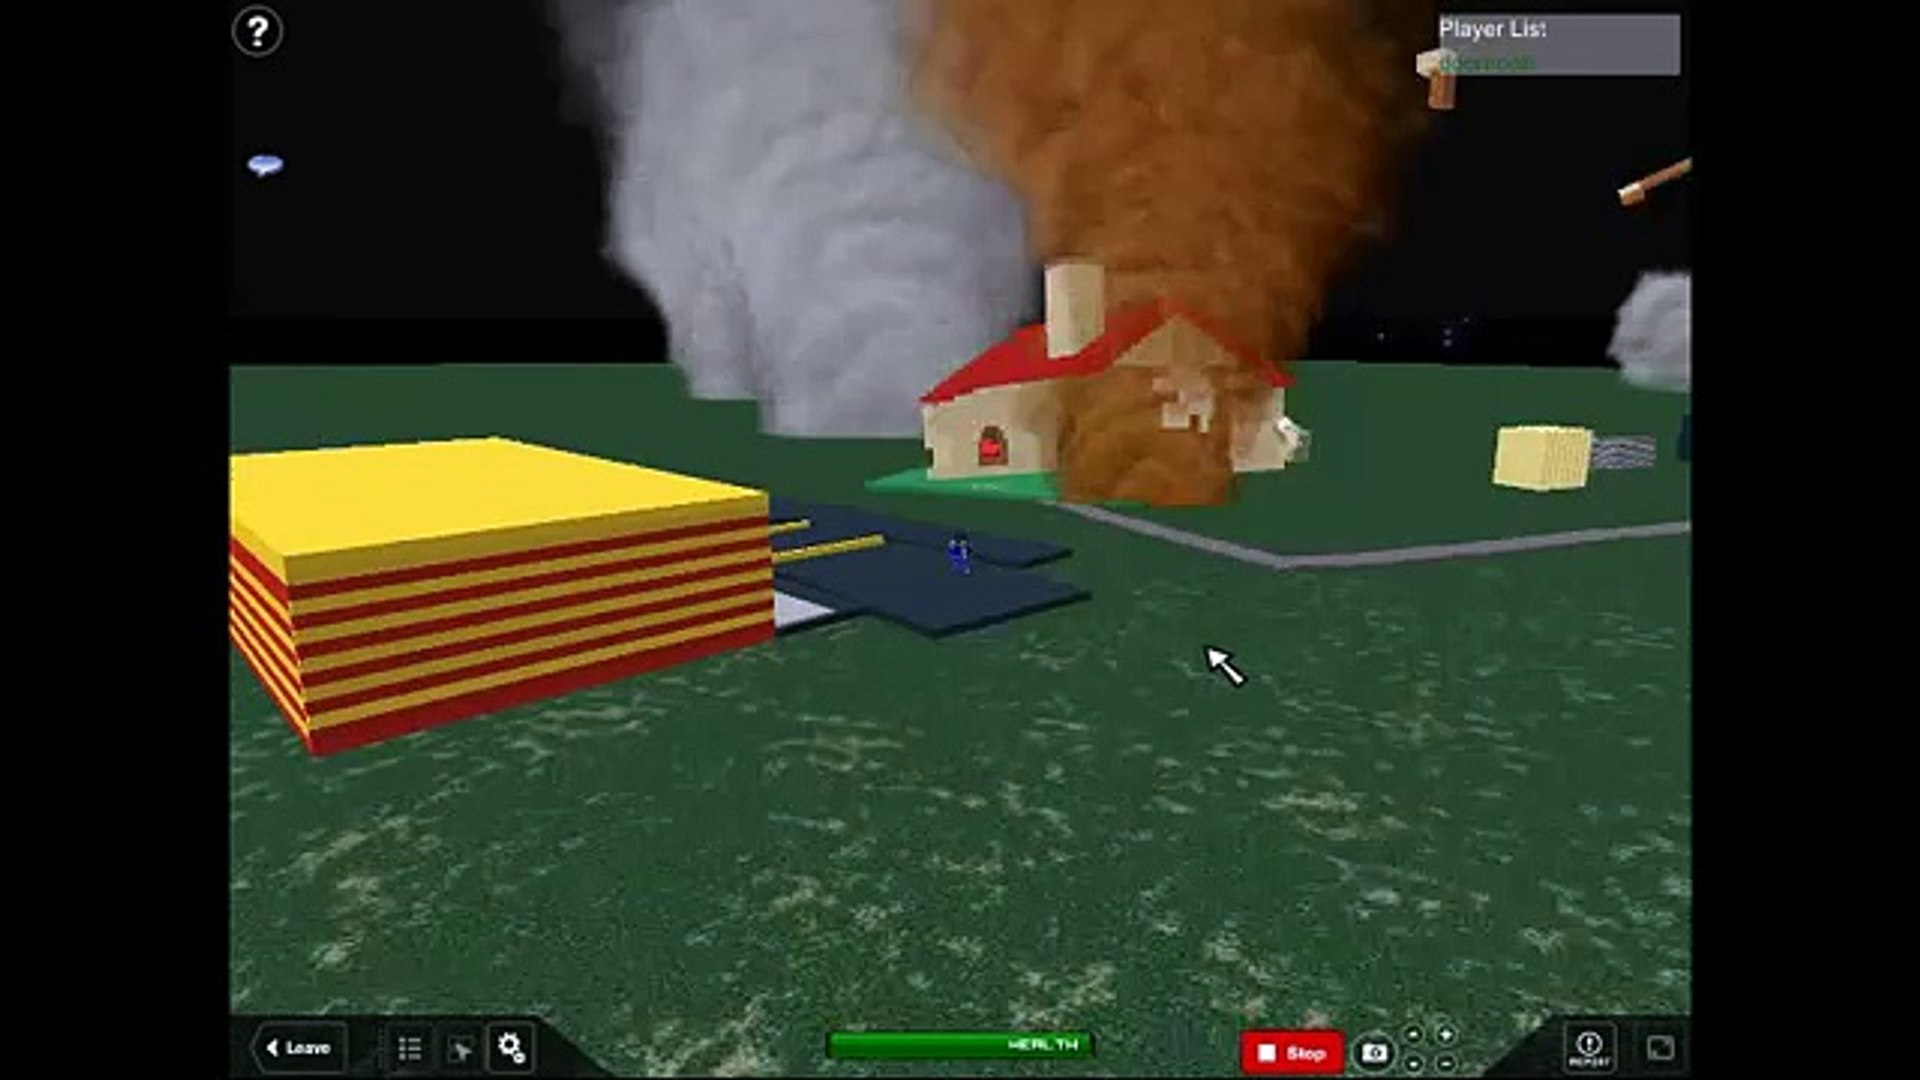 Roblox Tornado - tornado alley 2 in game roblox